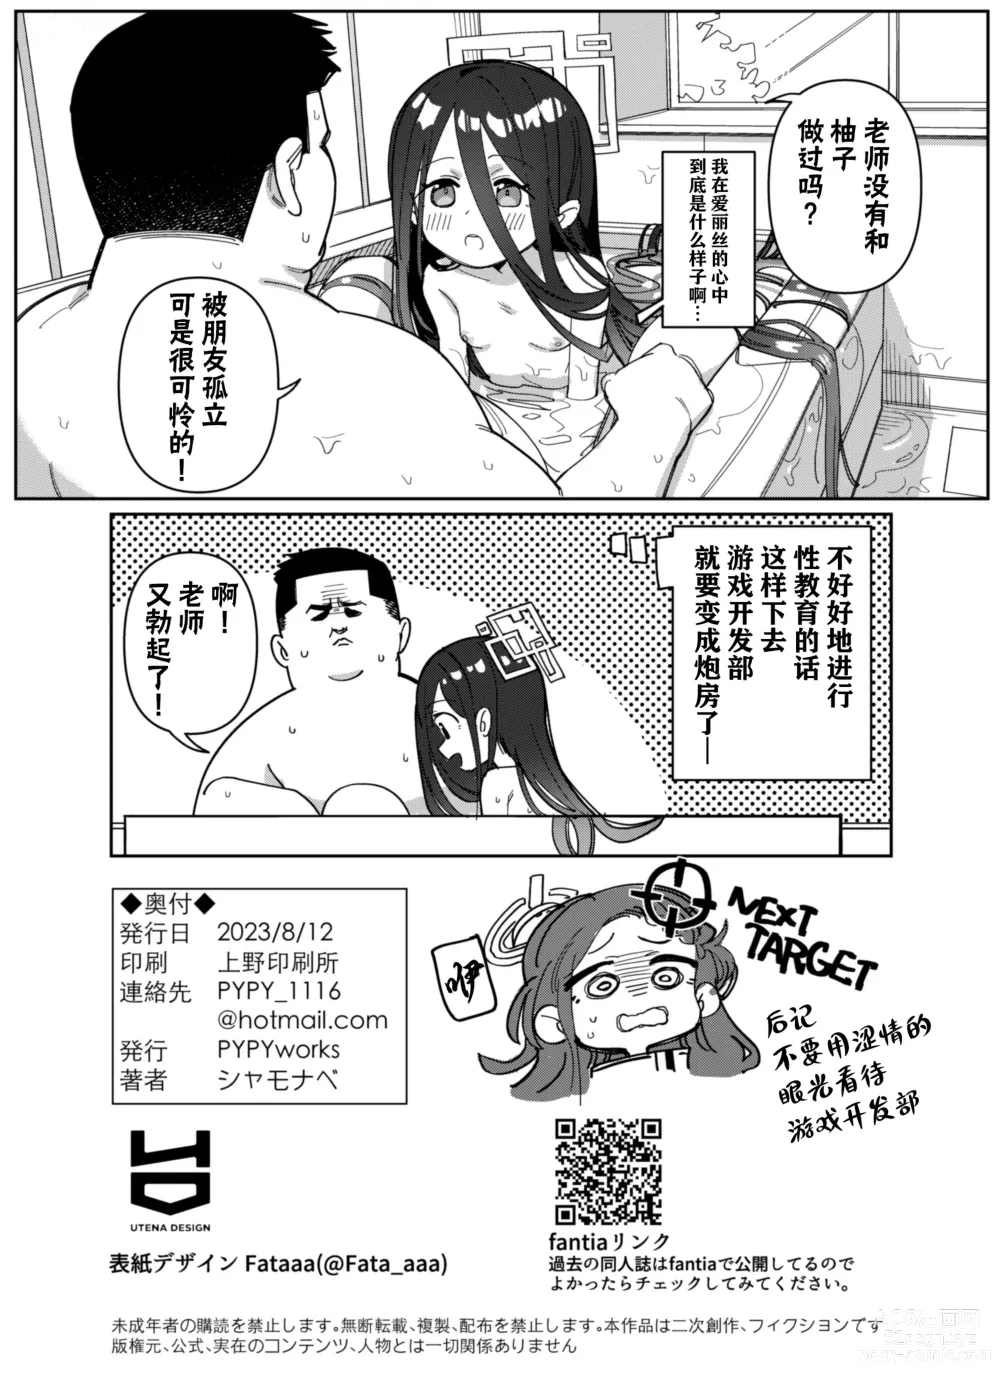 Page 19 of doujinshi 由于老师太弱了 爱丽丝来保护好老师!